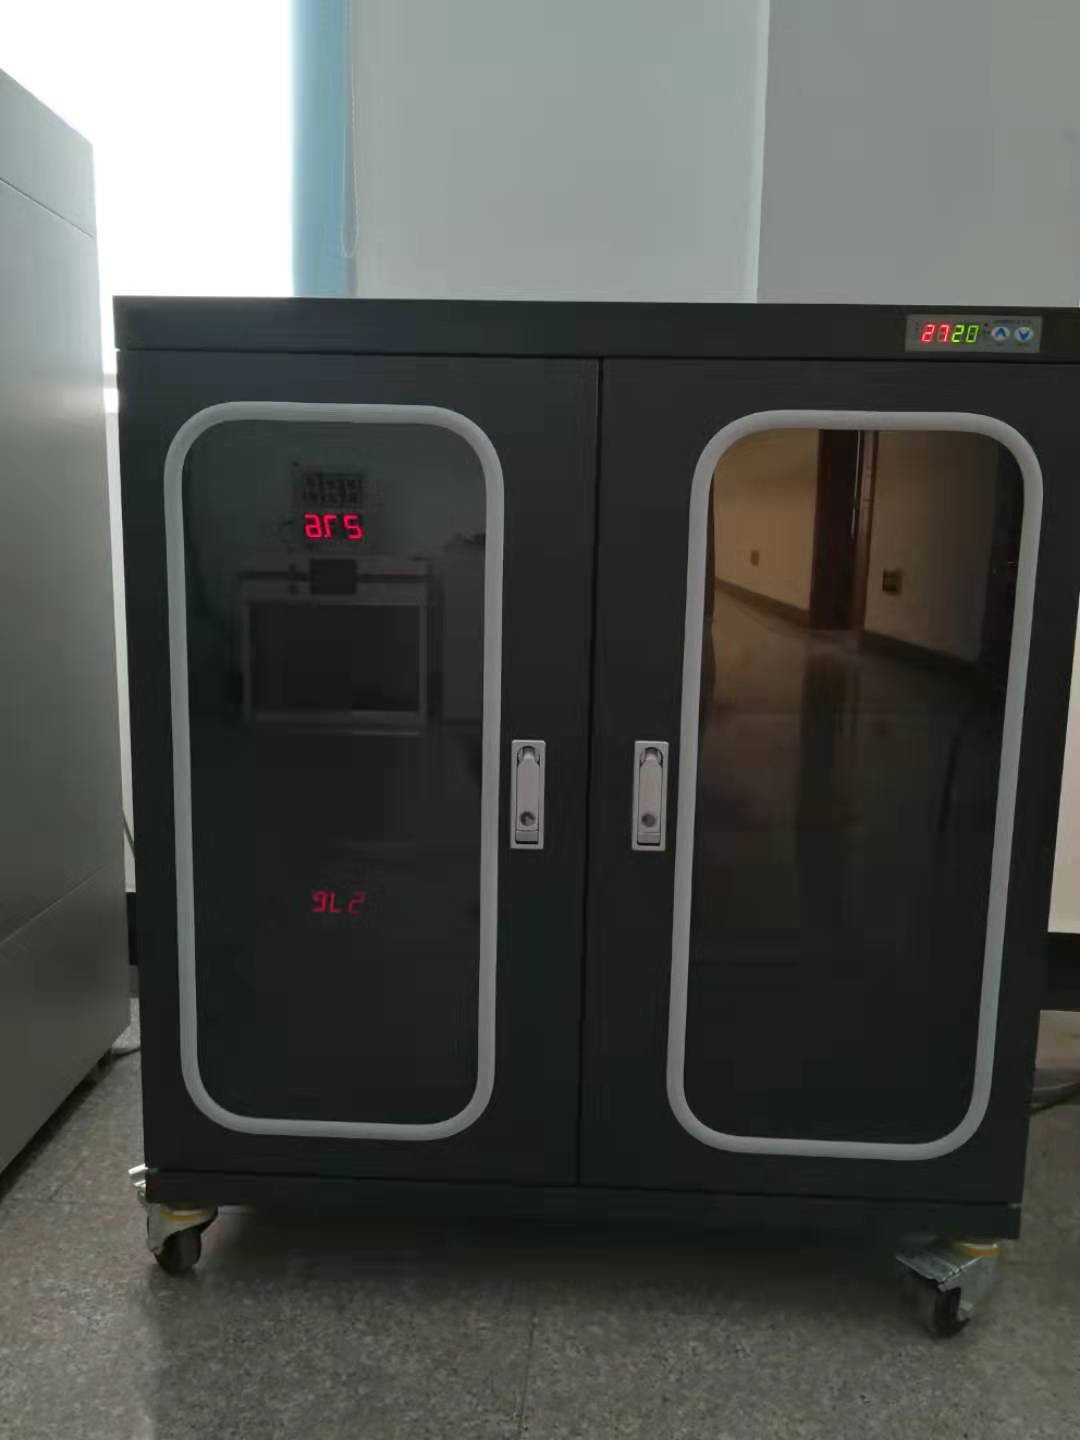 718升氮气柜工作原理_718升其他实验仪器装置哪家便宜-苏州三清仪器有限公司